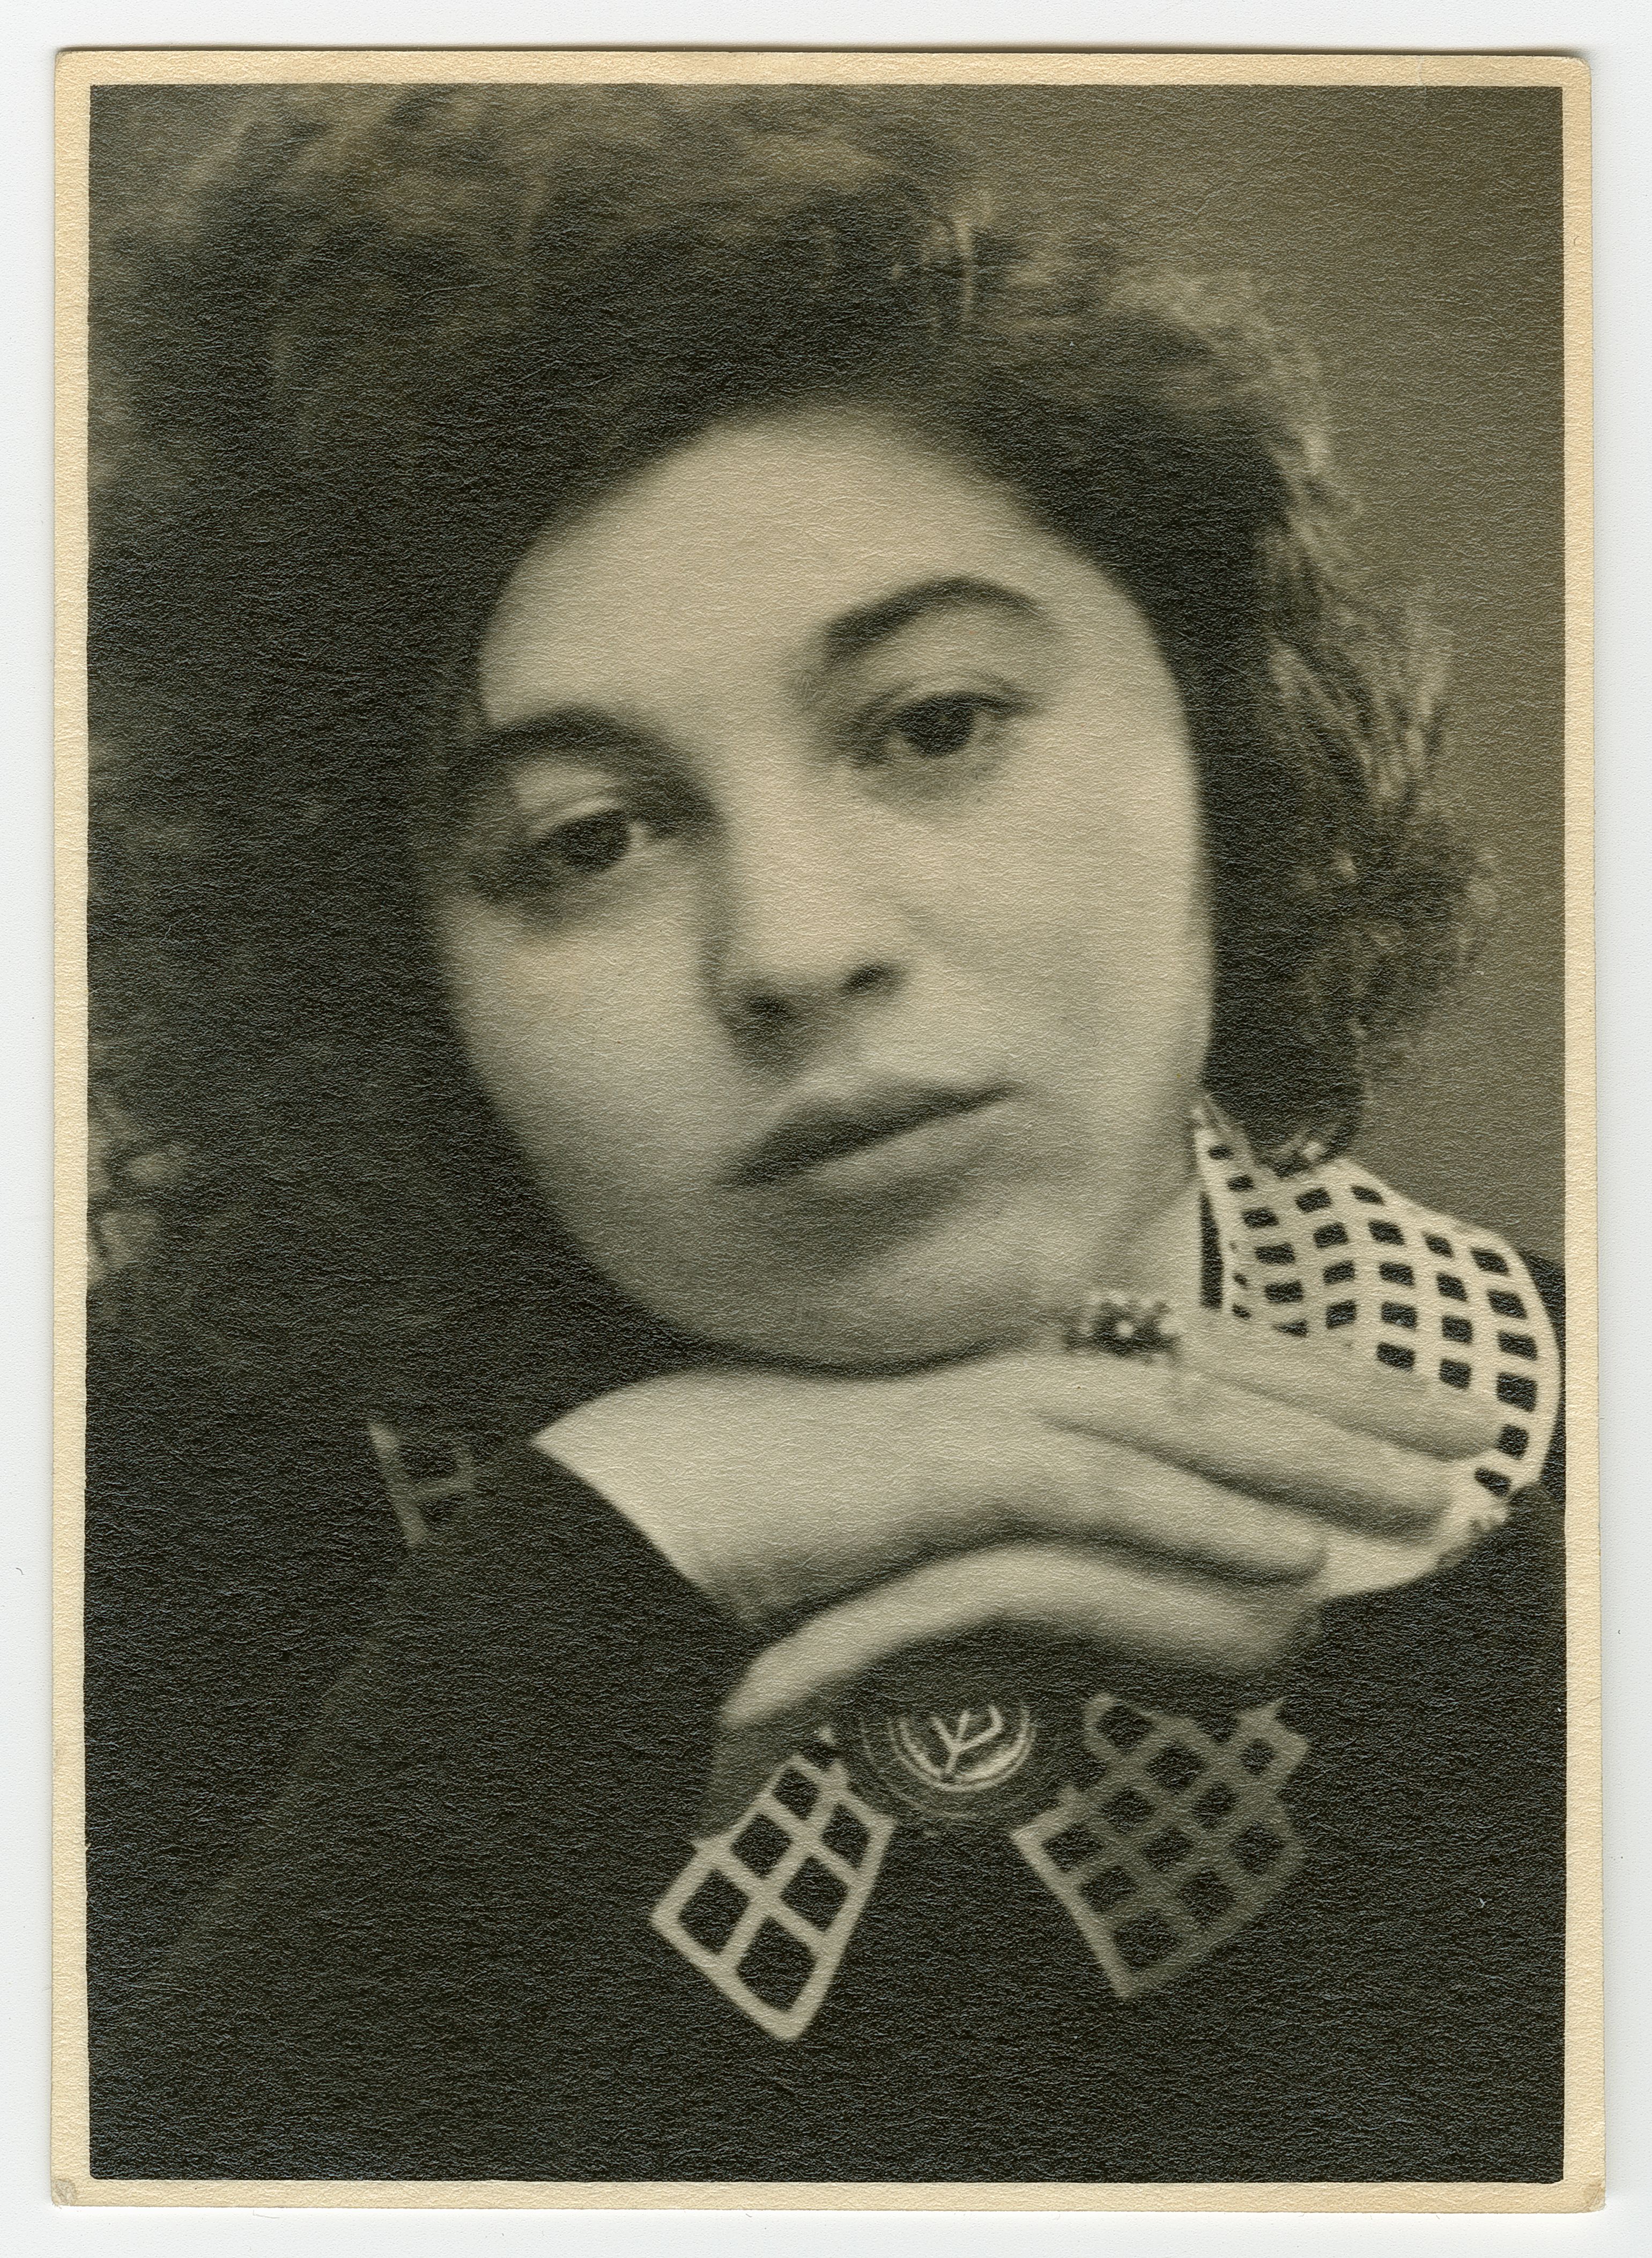 Mascha Kaléko, circa 1936